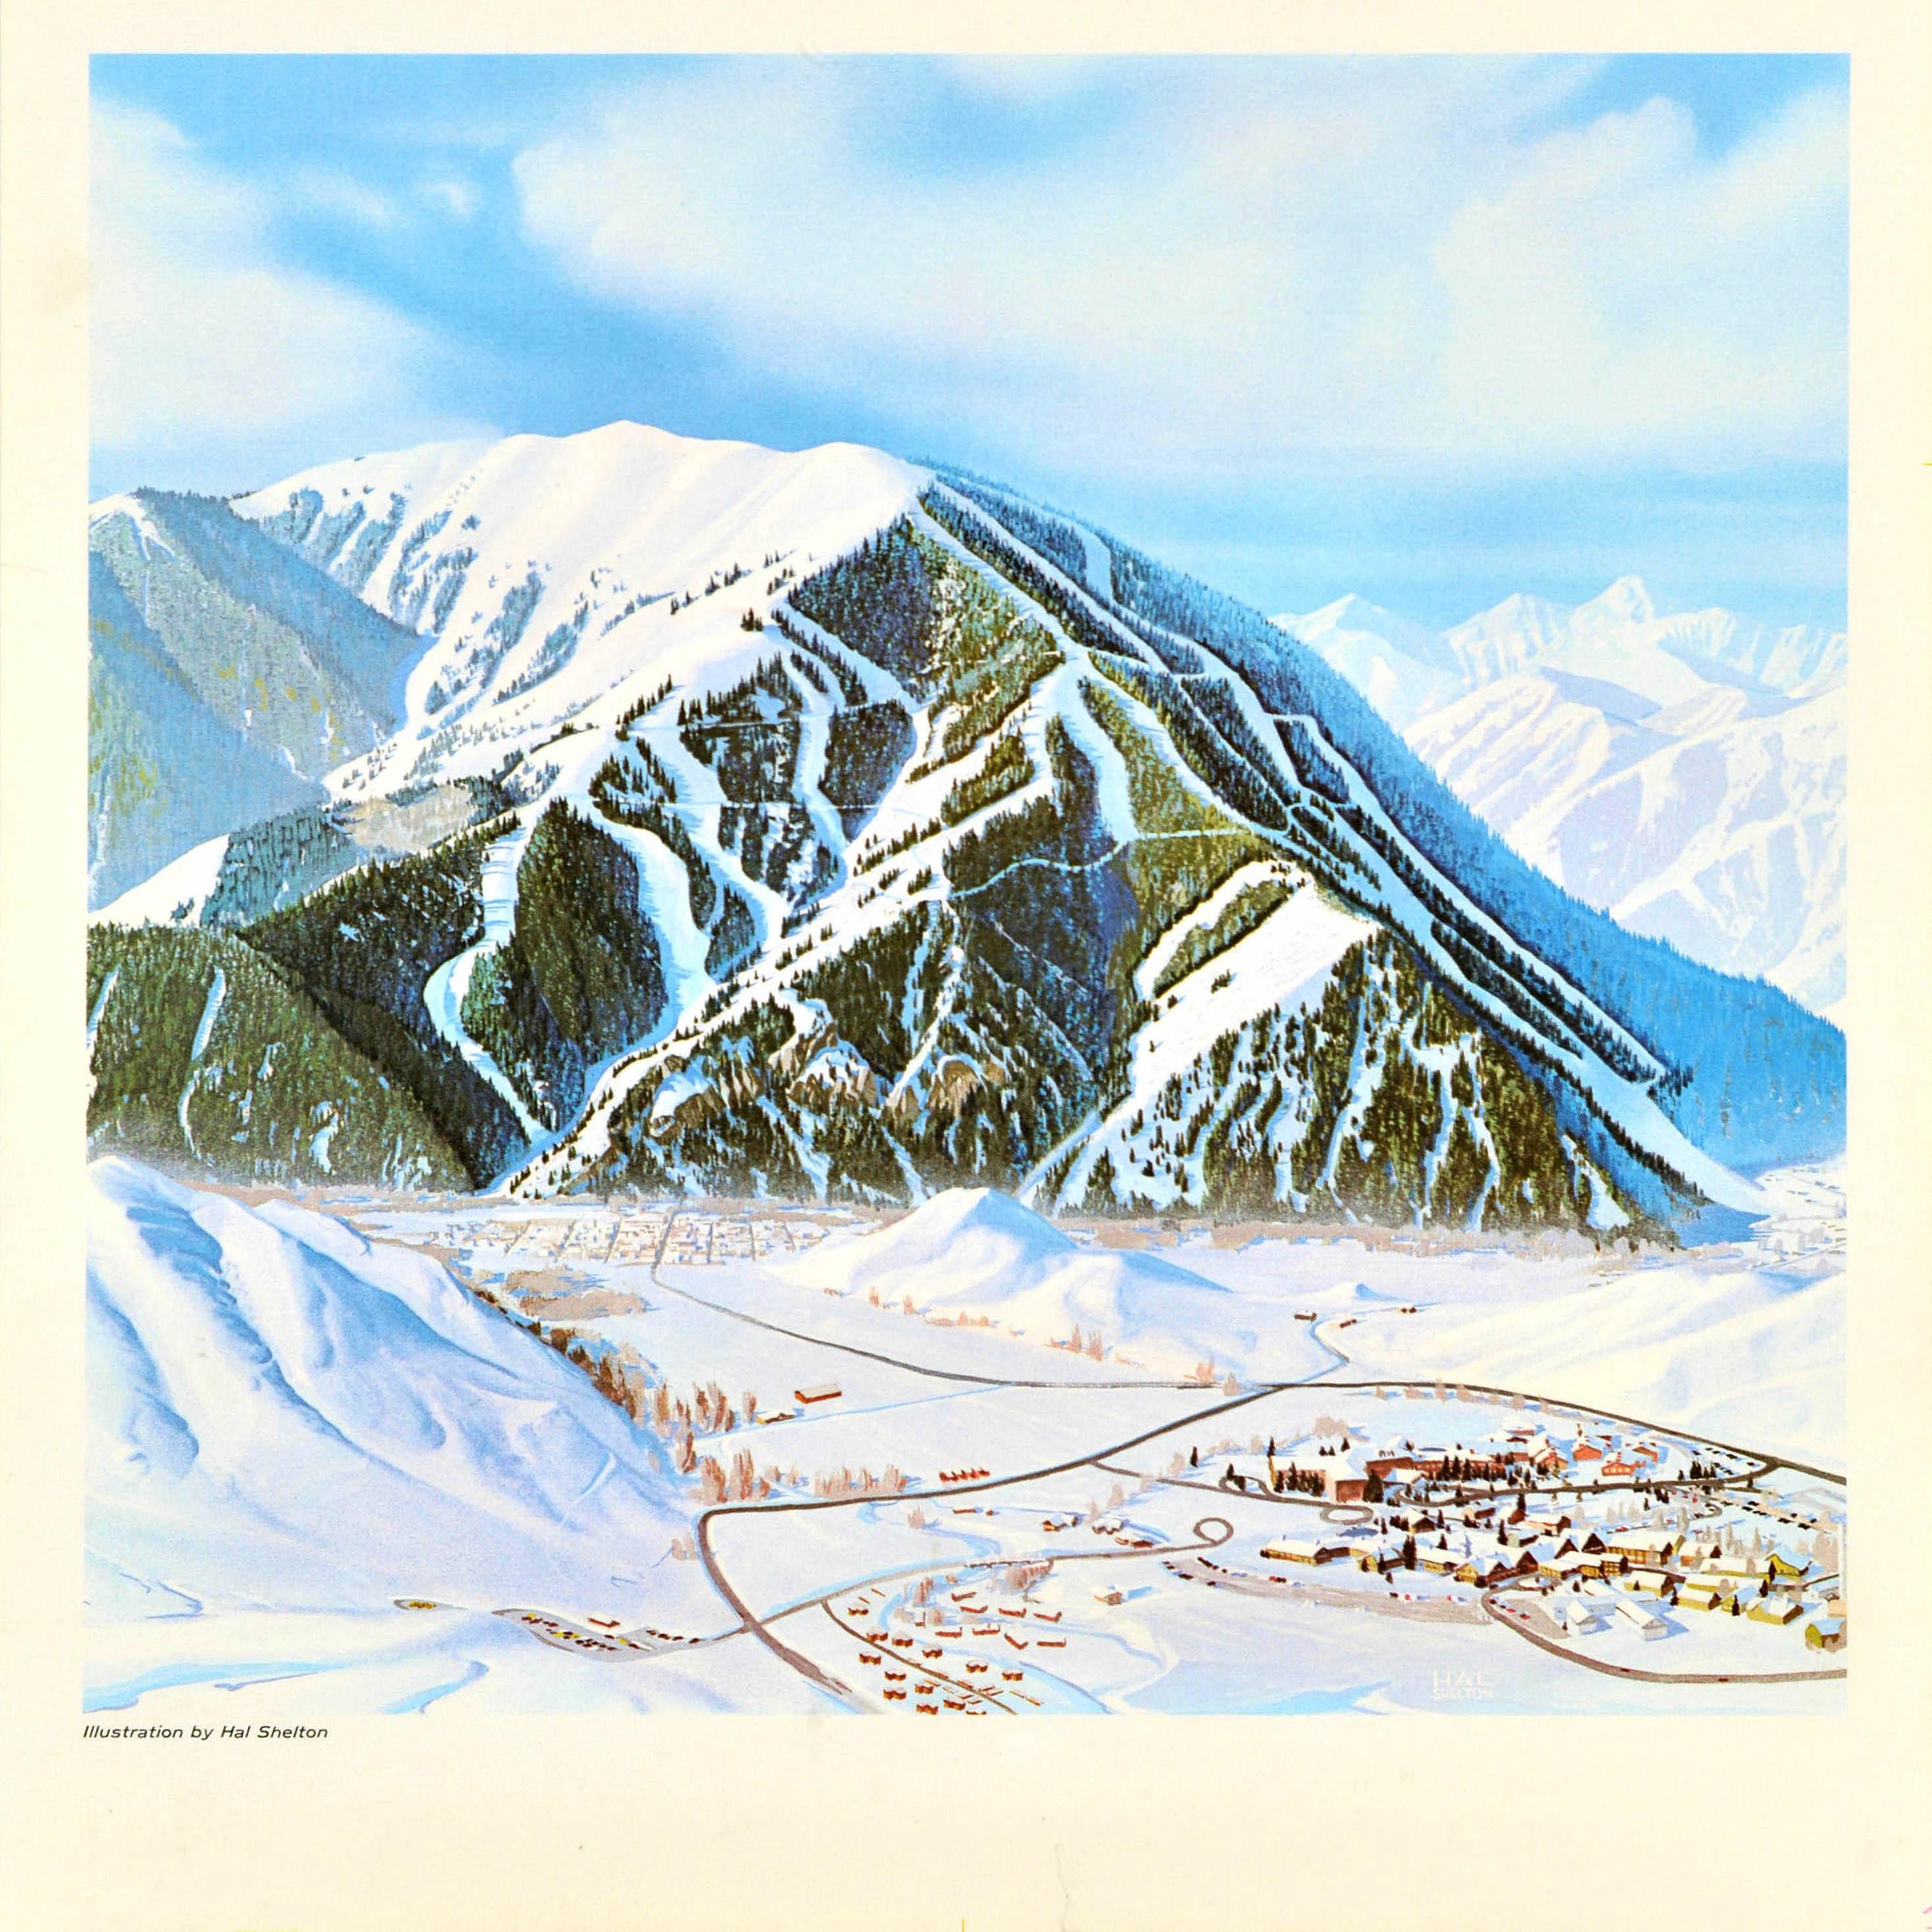 Original-Winterreiseplakat für Sun Valley in Idaho, USA, mit einer Skikartenansicht des schneebedeckten Bald Mountain mit Skipisten zwischen den Bäumen und der alpinen Skistadt (gegründet 1936) im Tal darunter, der Text in fetten stilisierten